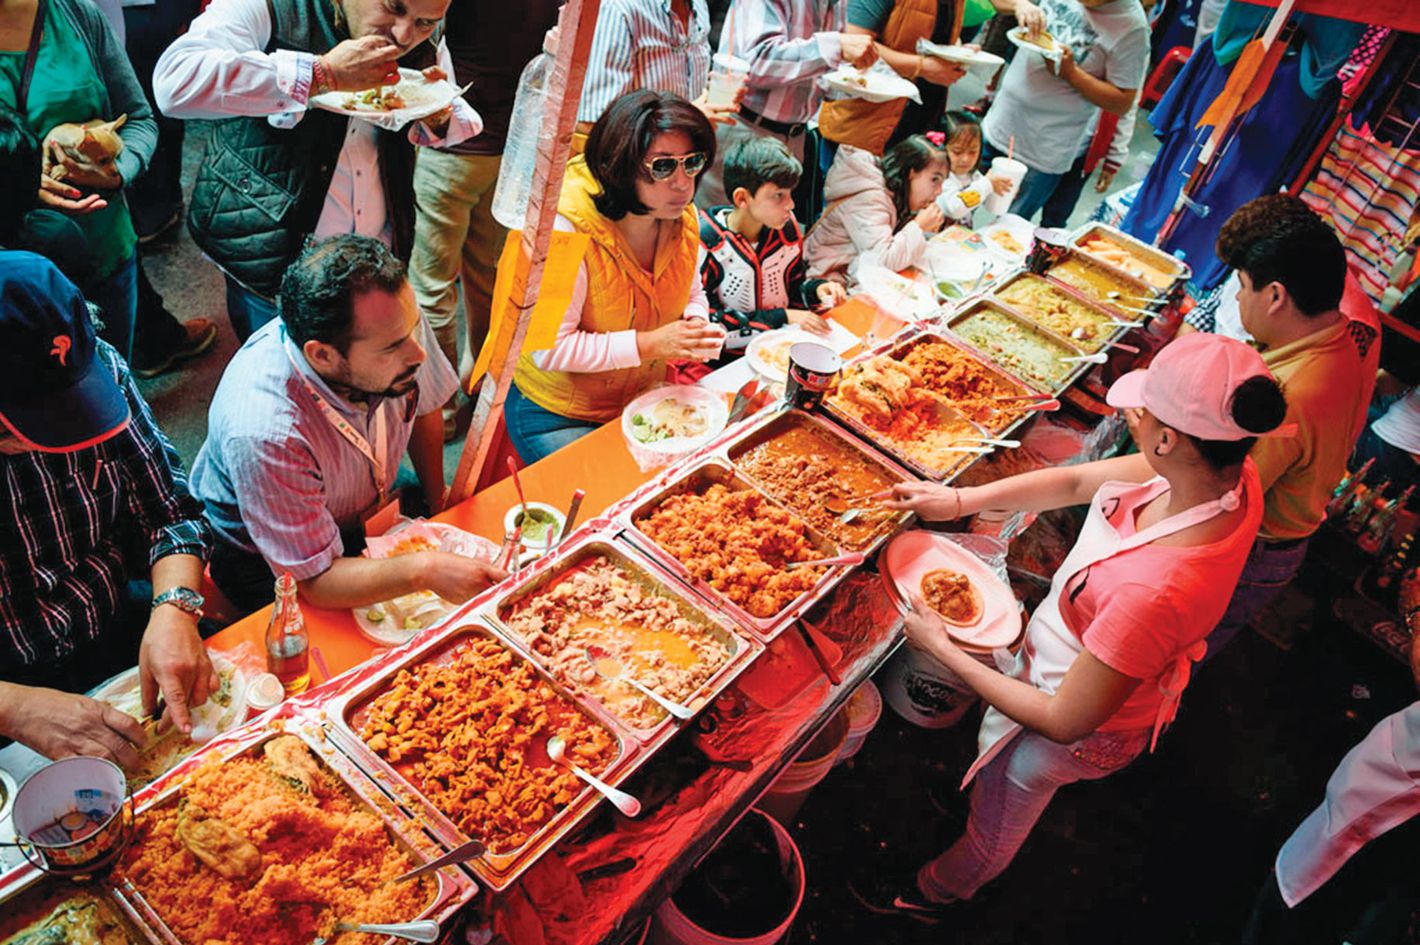 world street food tour photos